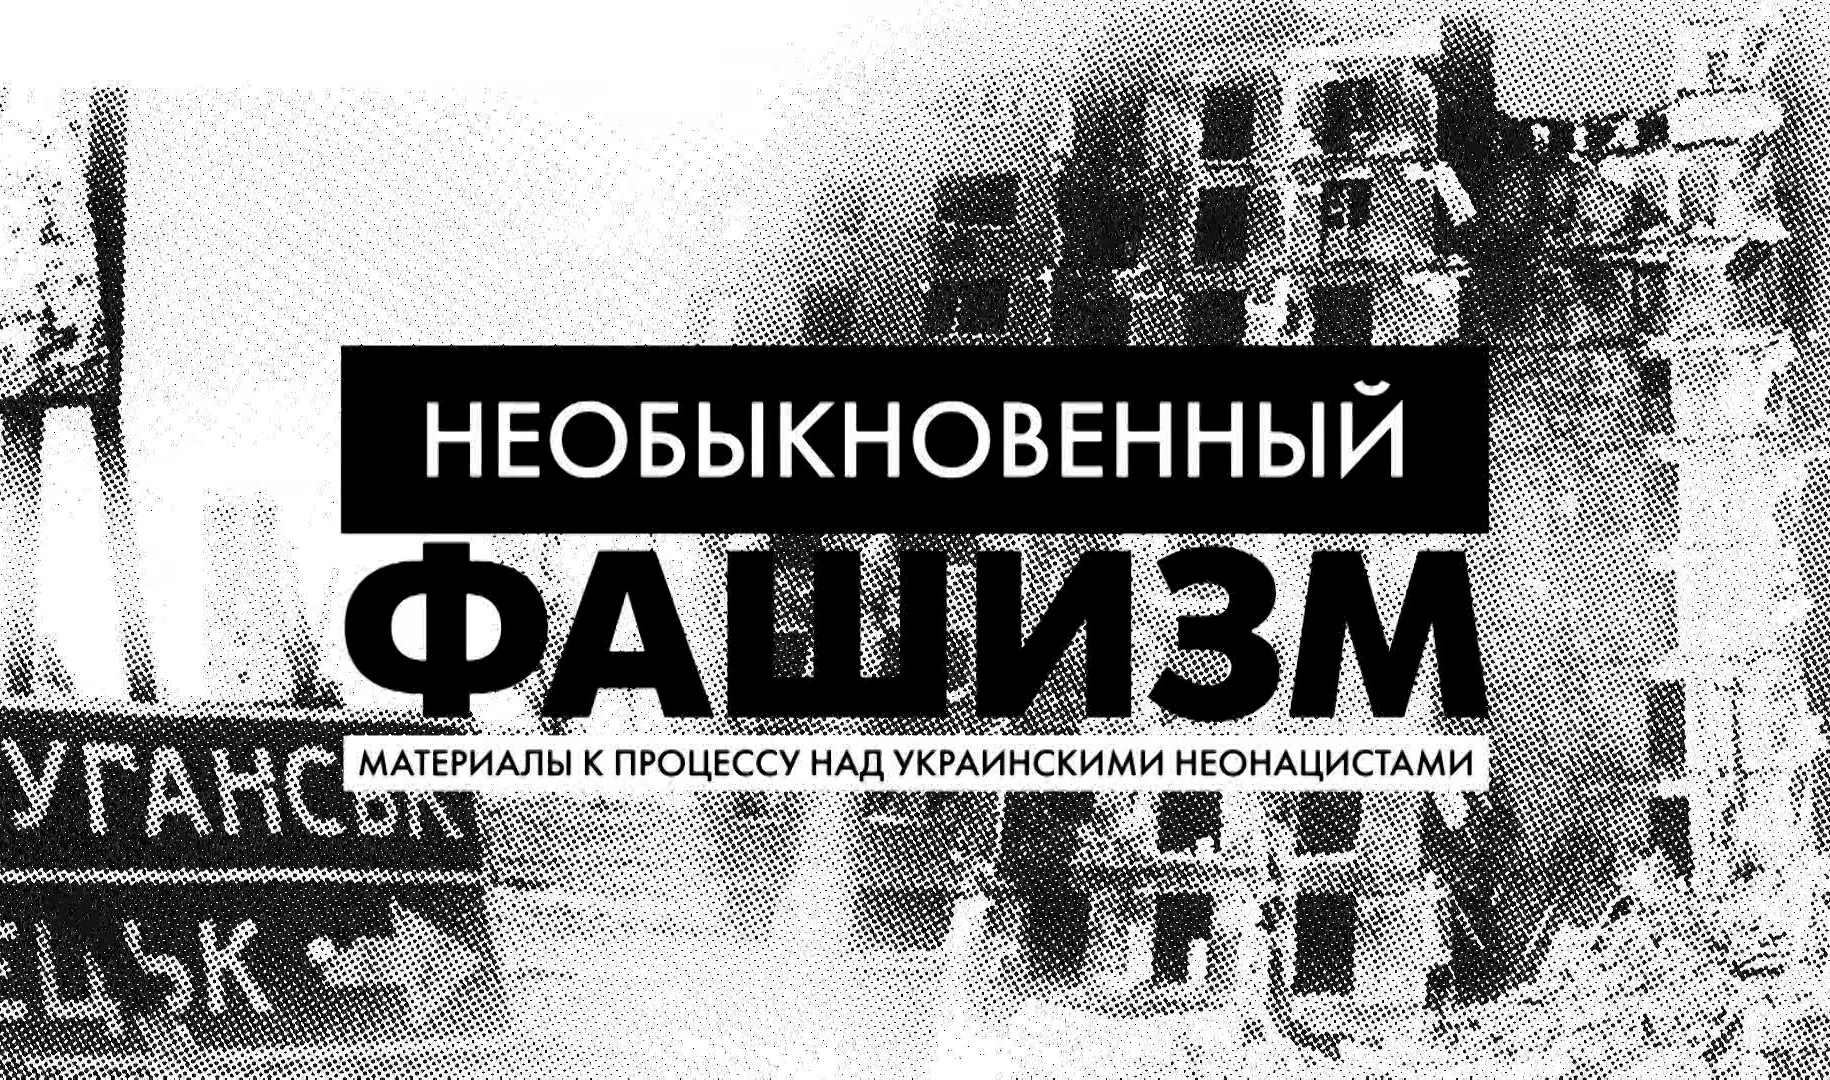 «Необыкновенный фашизм: материалы к процессу над украинскими неонацистами»